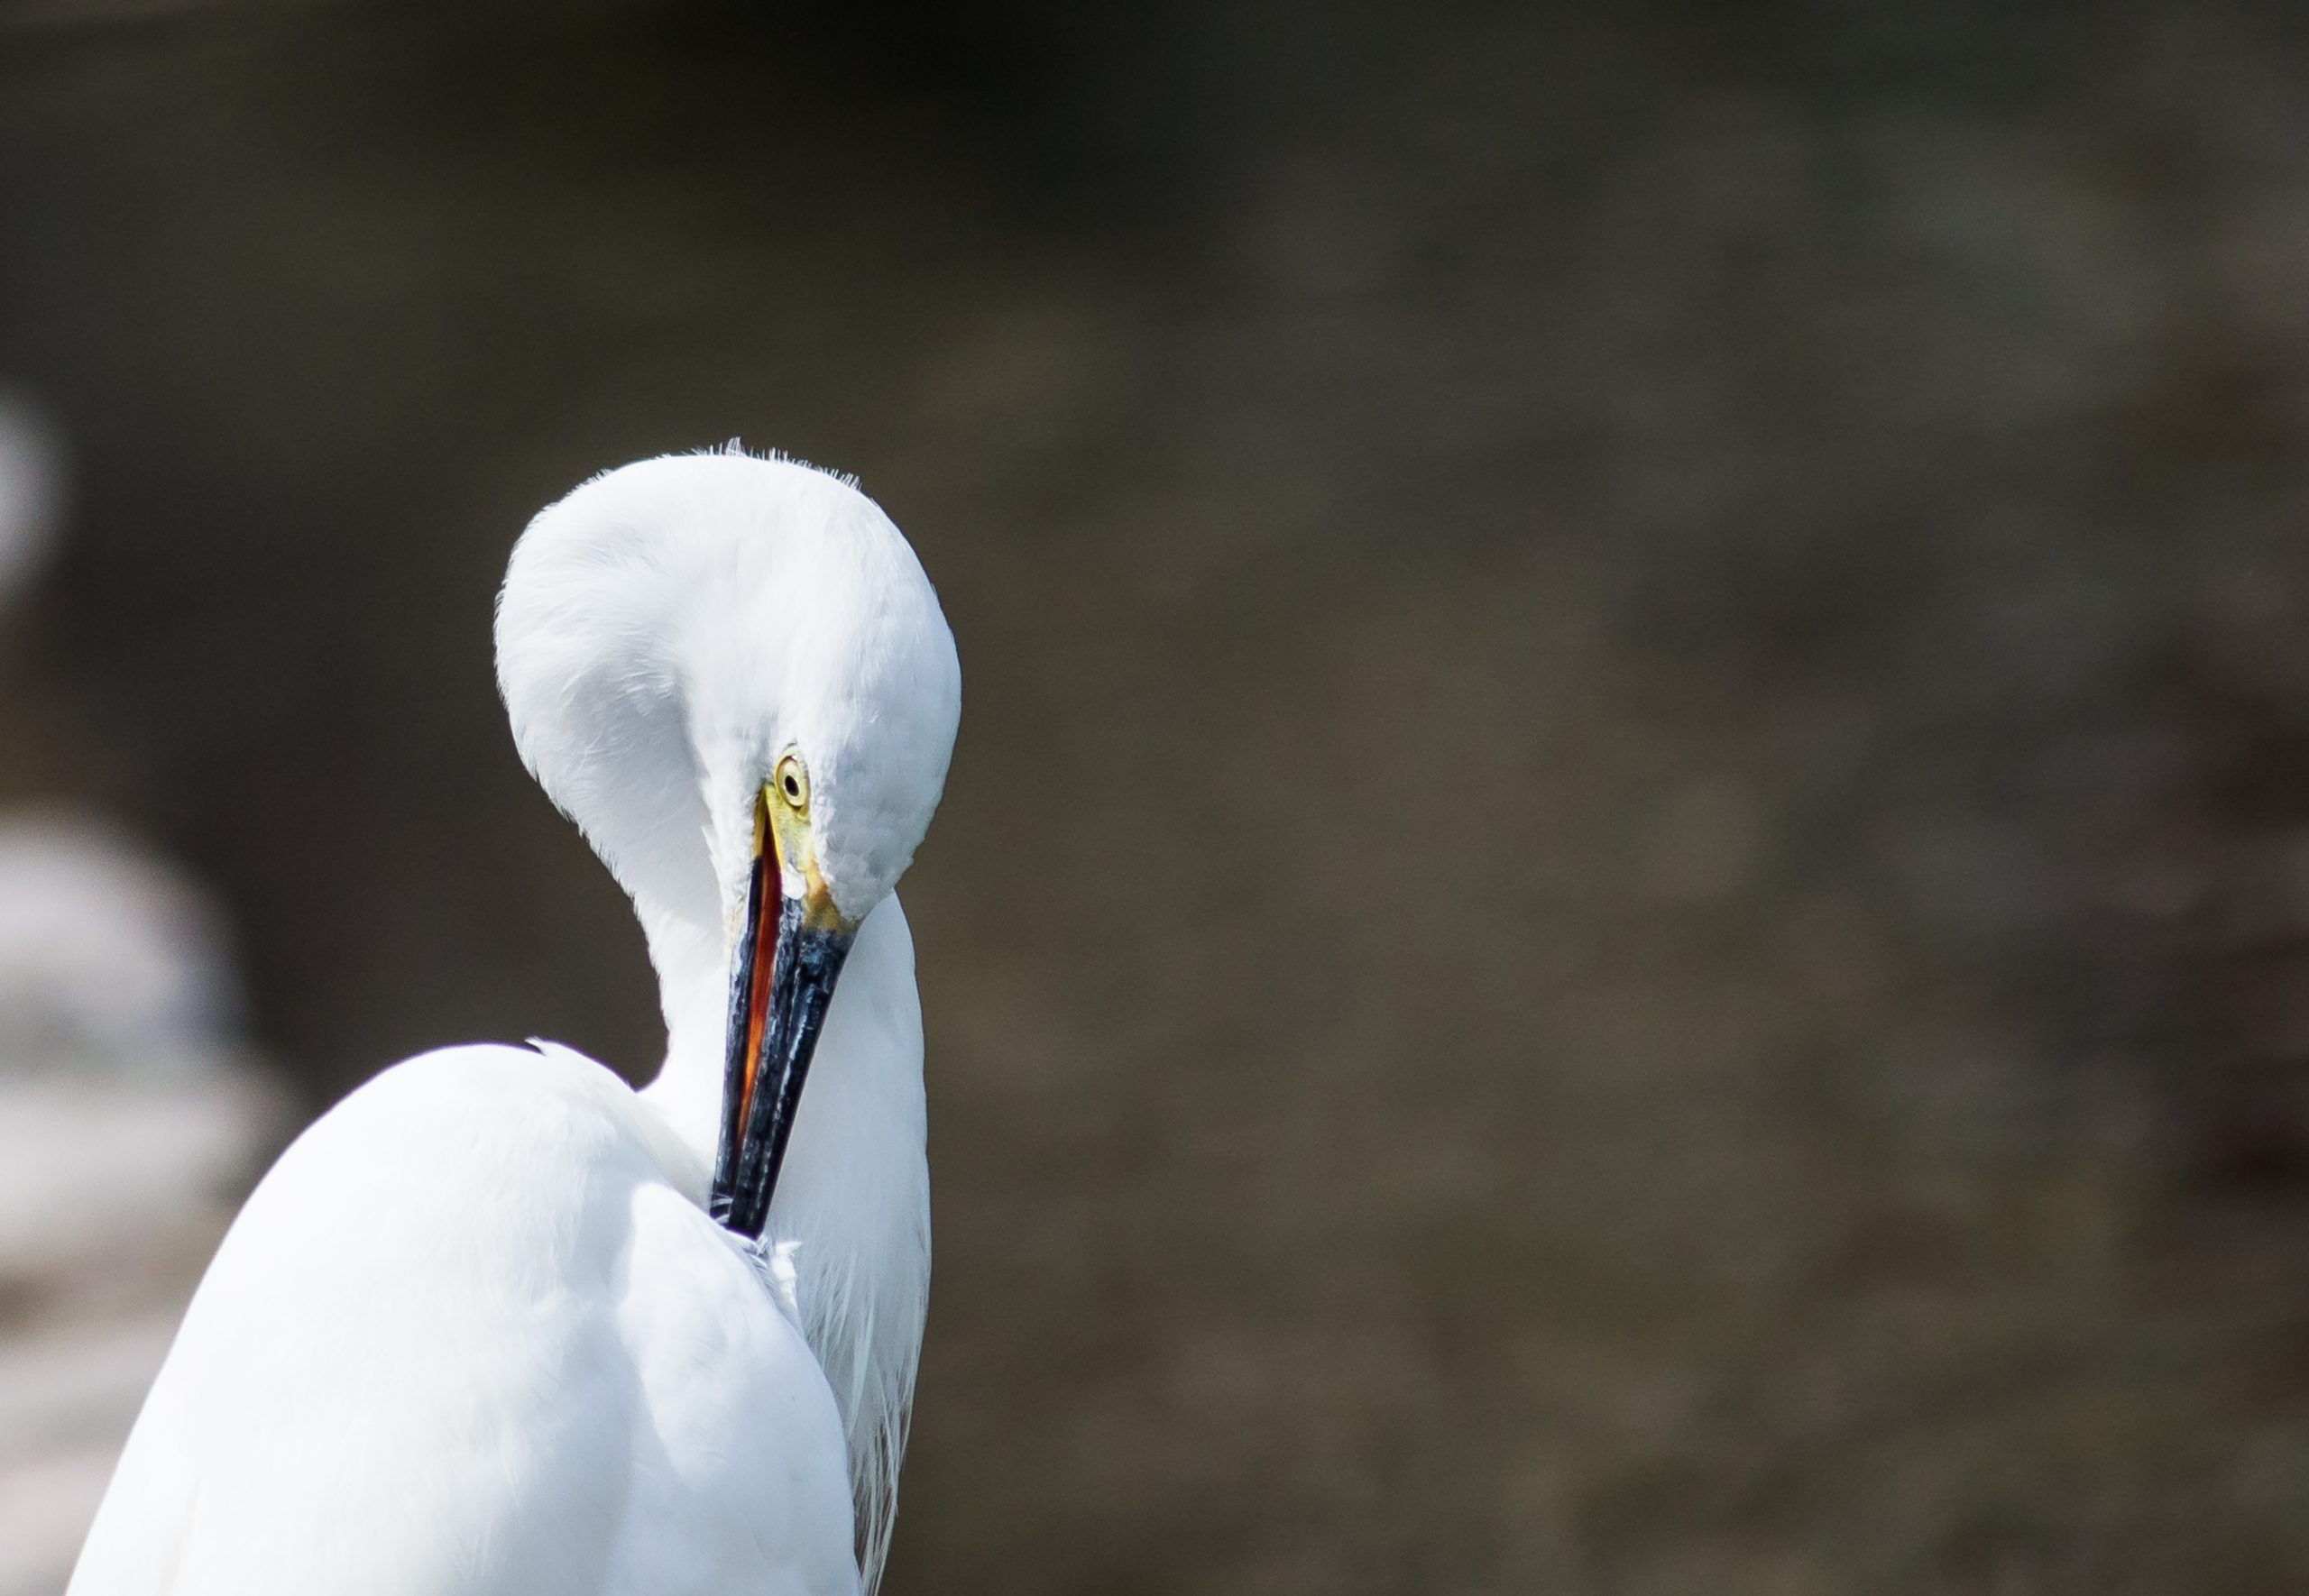 An egret bird